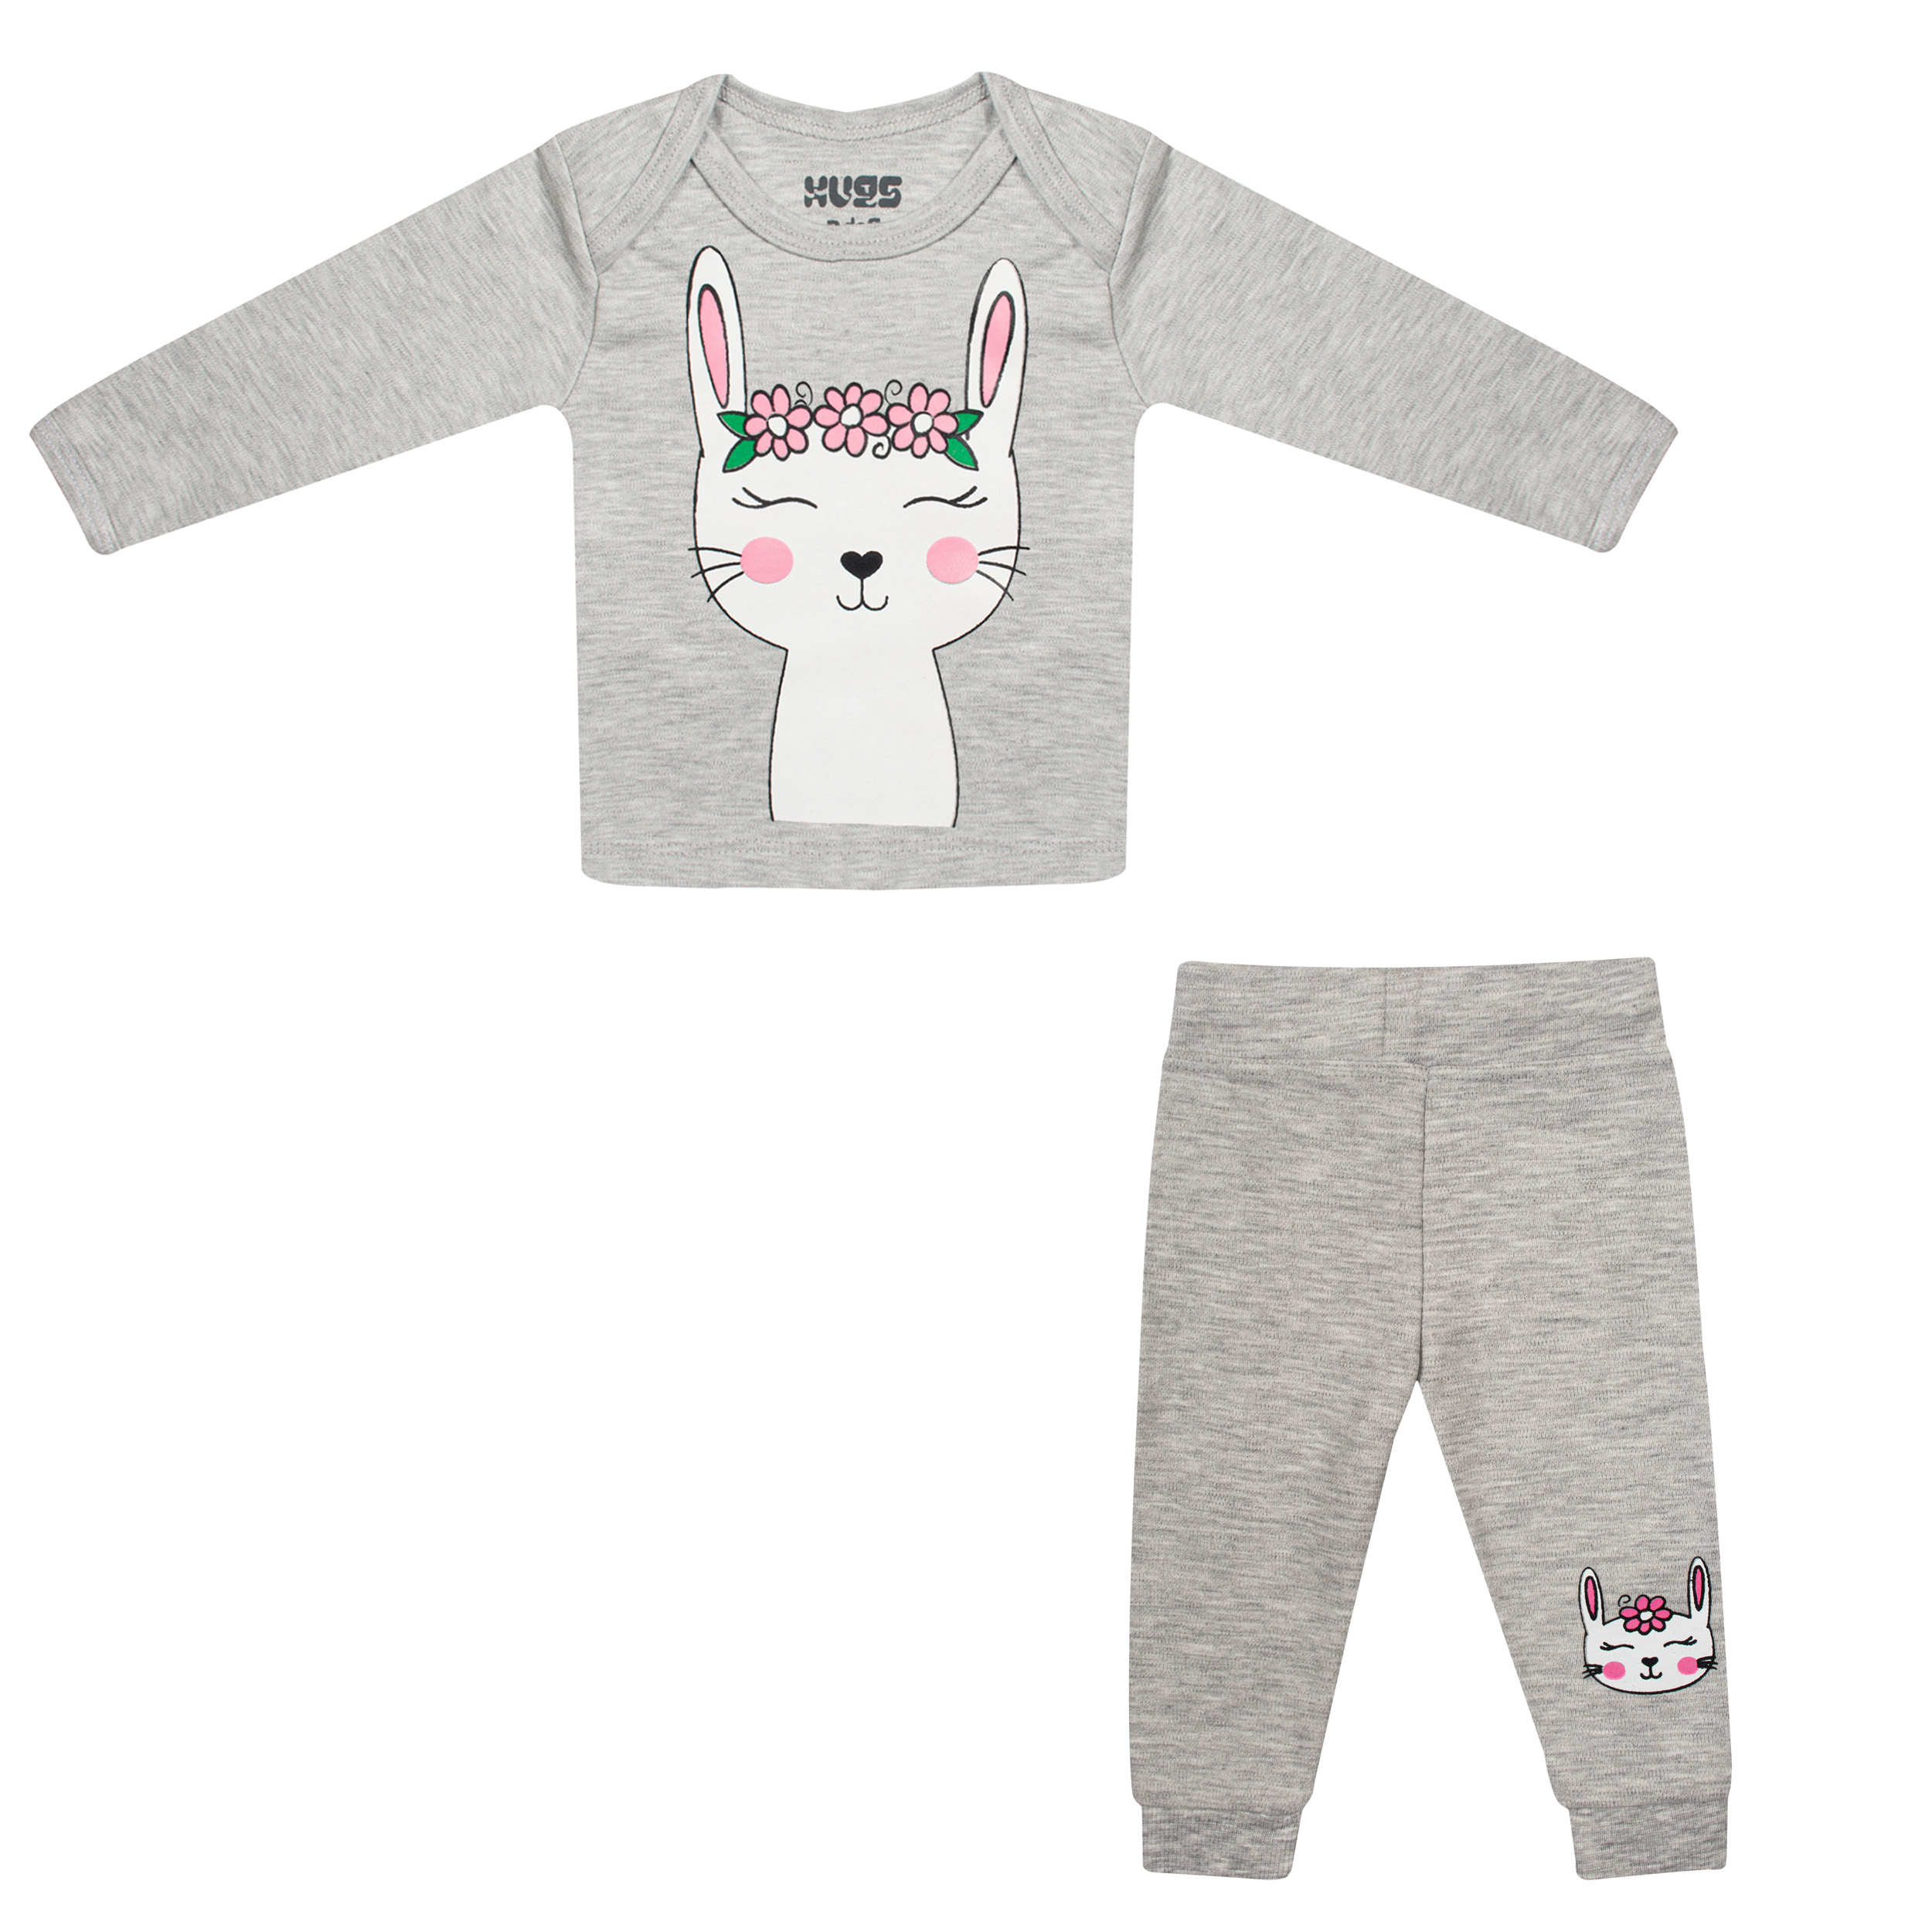 نقد و بررسی ست تی شرت و شلوار نوزادی هاگز طرح Rabbit کد HS43 توسط خریداران